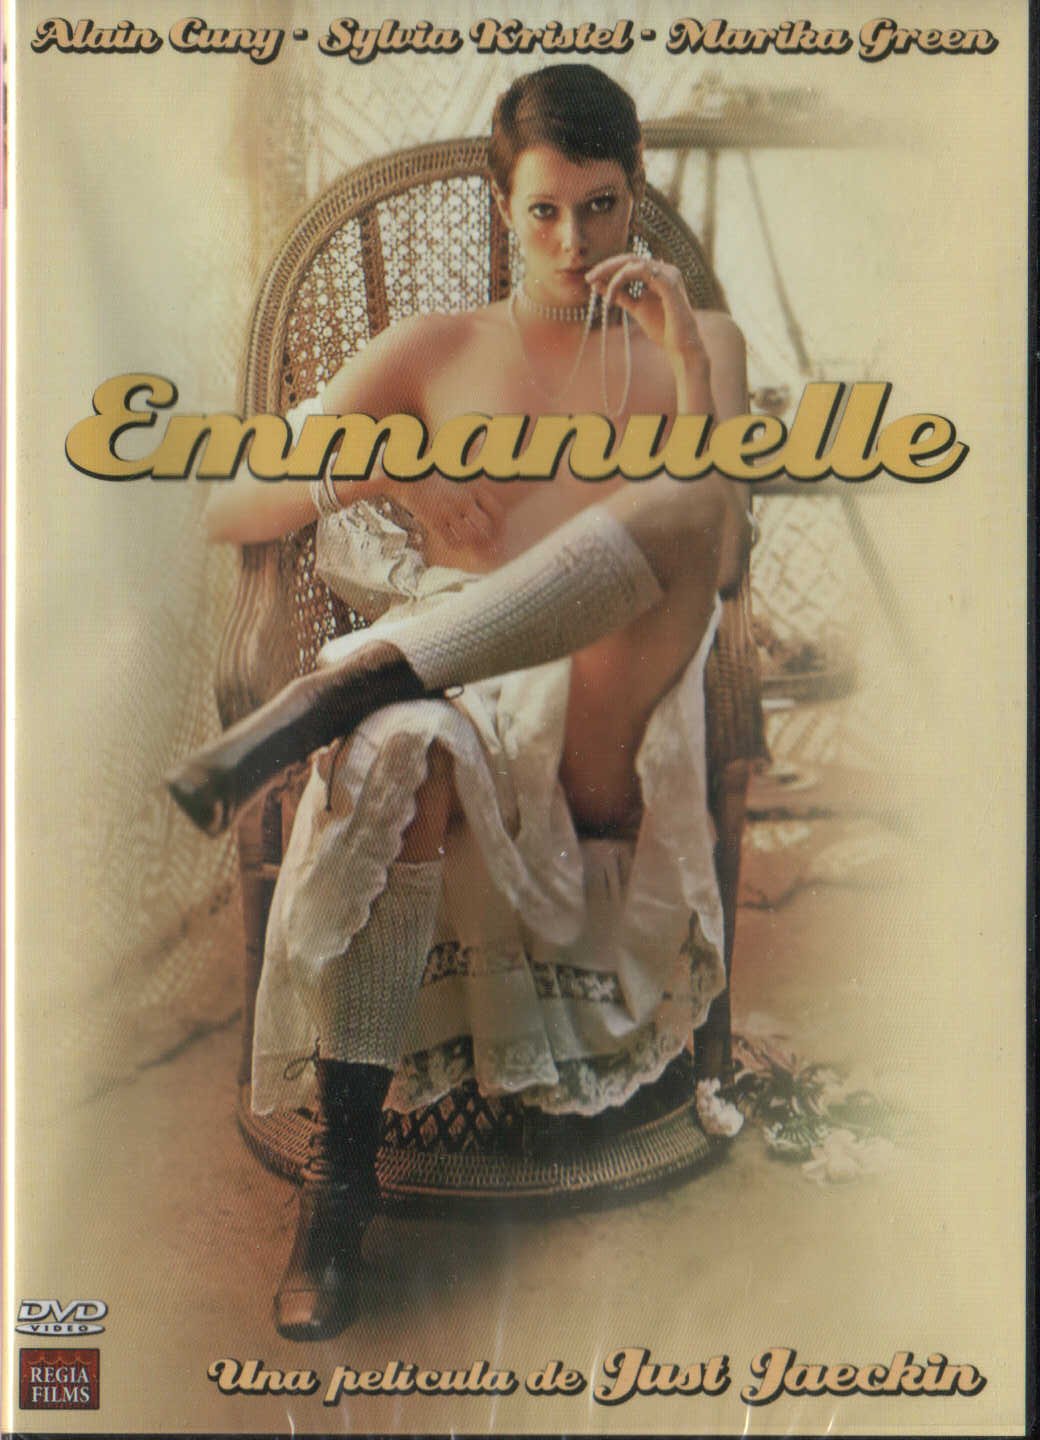 Banner Phim Hồi Kí Của Emmanuelle (Emmanuelle)